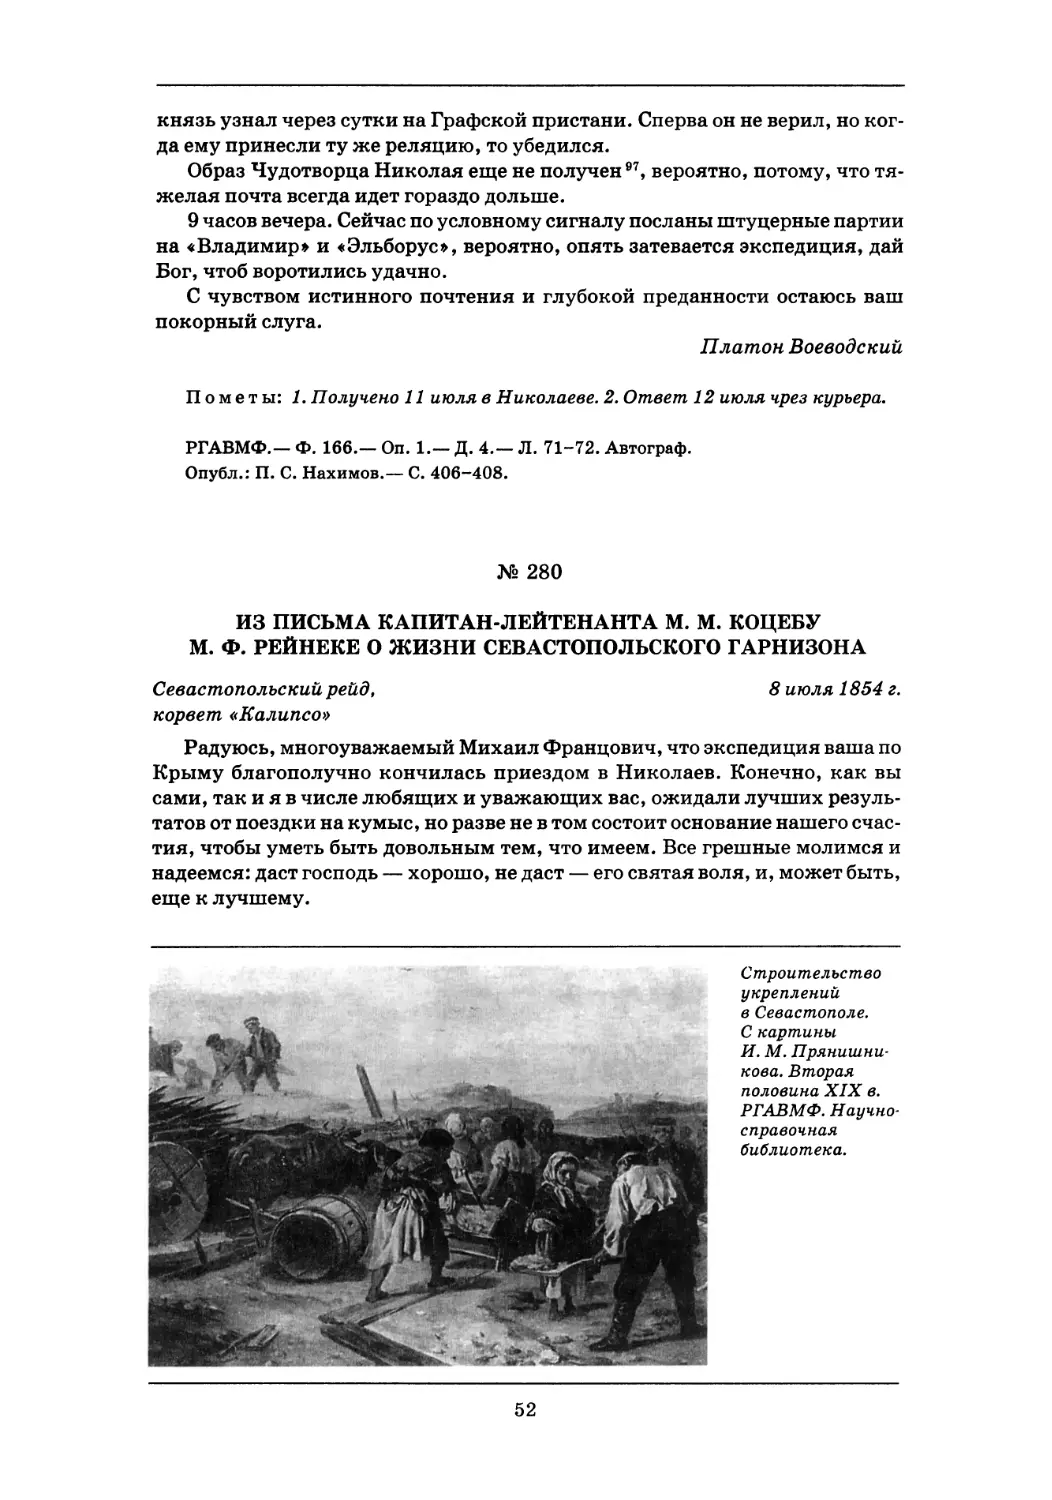 280. 8 июля 1854 г.— Из письма капитан-лейтенанта М.М. Коцебу М.Ф. Рейнеке о жизни Севастопольского гарнизона